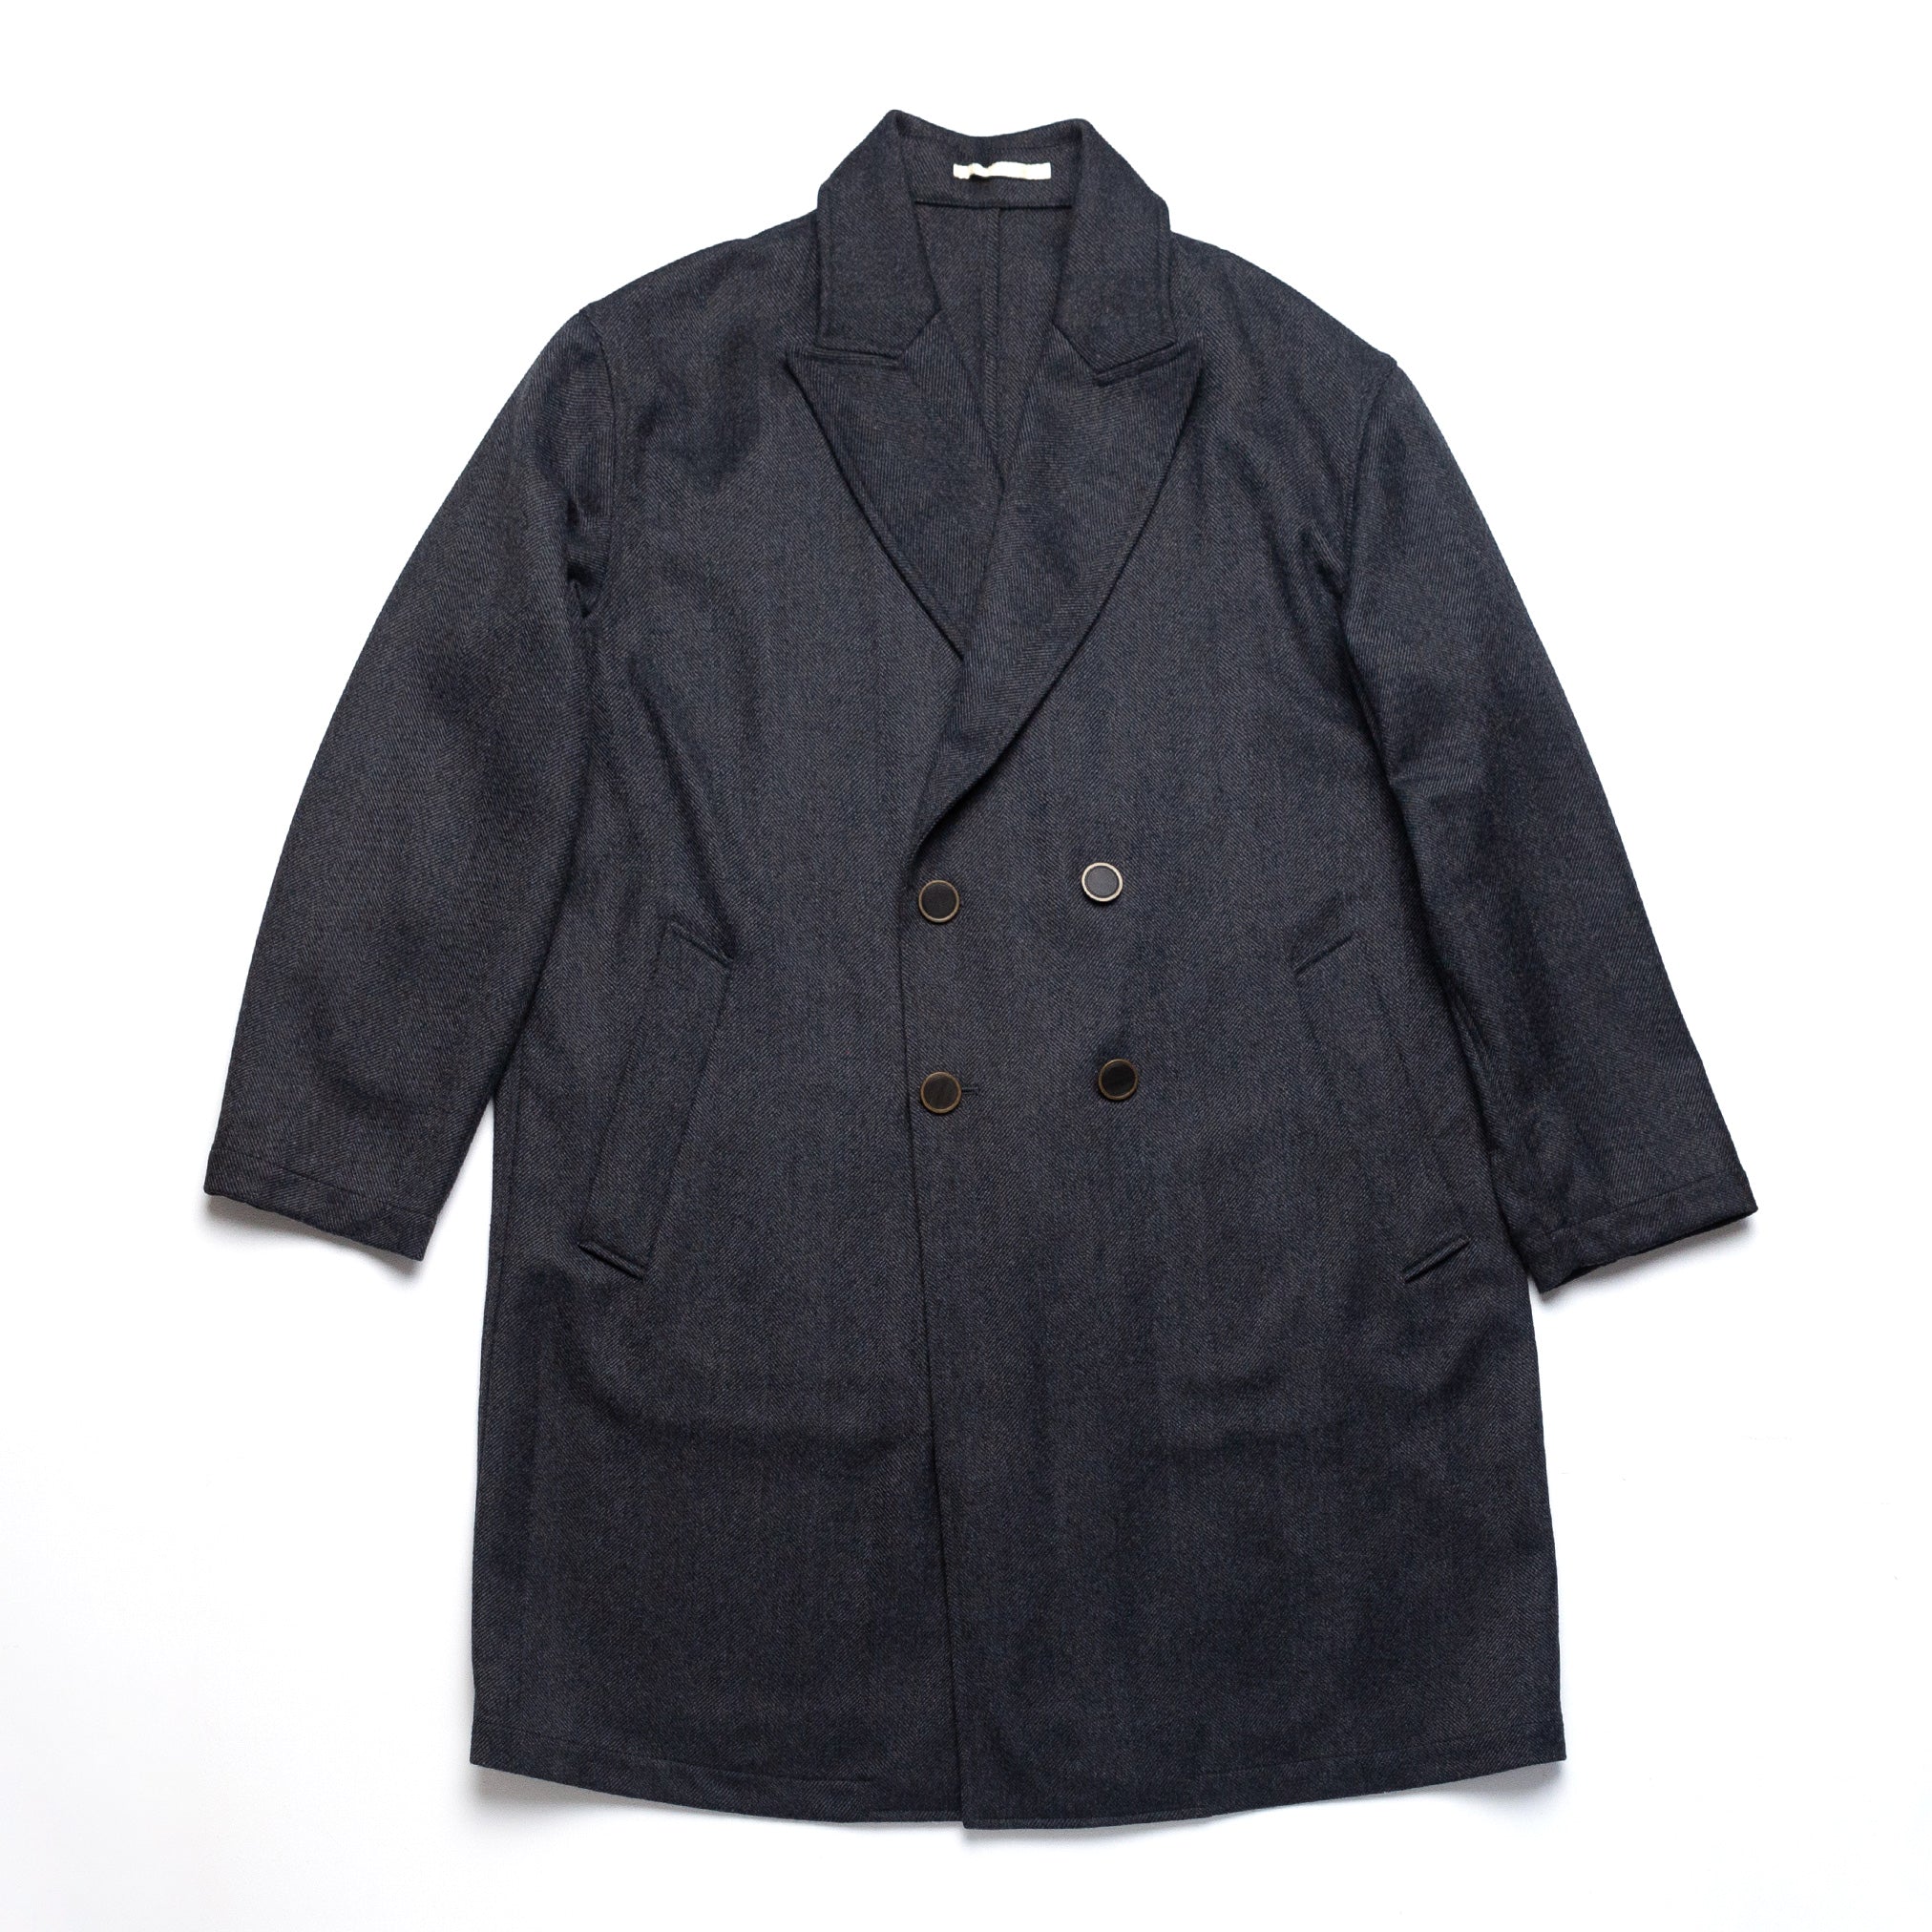 The Charles Overcoat in Charcoal Herringbone Wool